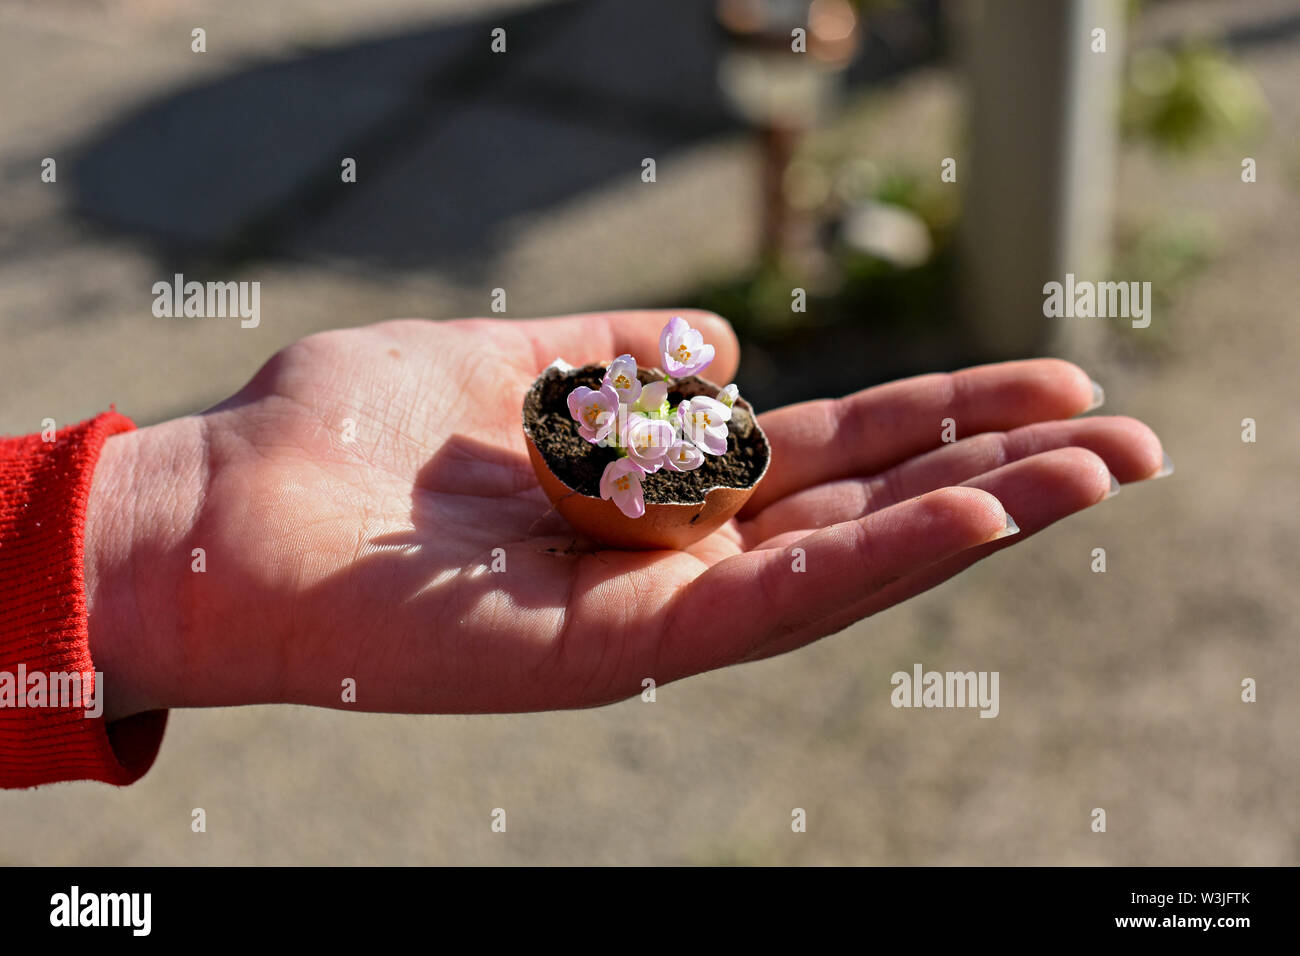 Frau Hand, die Kleine rosa Blumen in Eierschale/Spring Home rustikale Dekoration/konzeptionellen Bild des Frühlings Erwachen und neue Anfänge - Bild Stockfoto